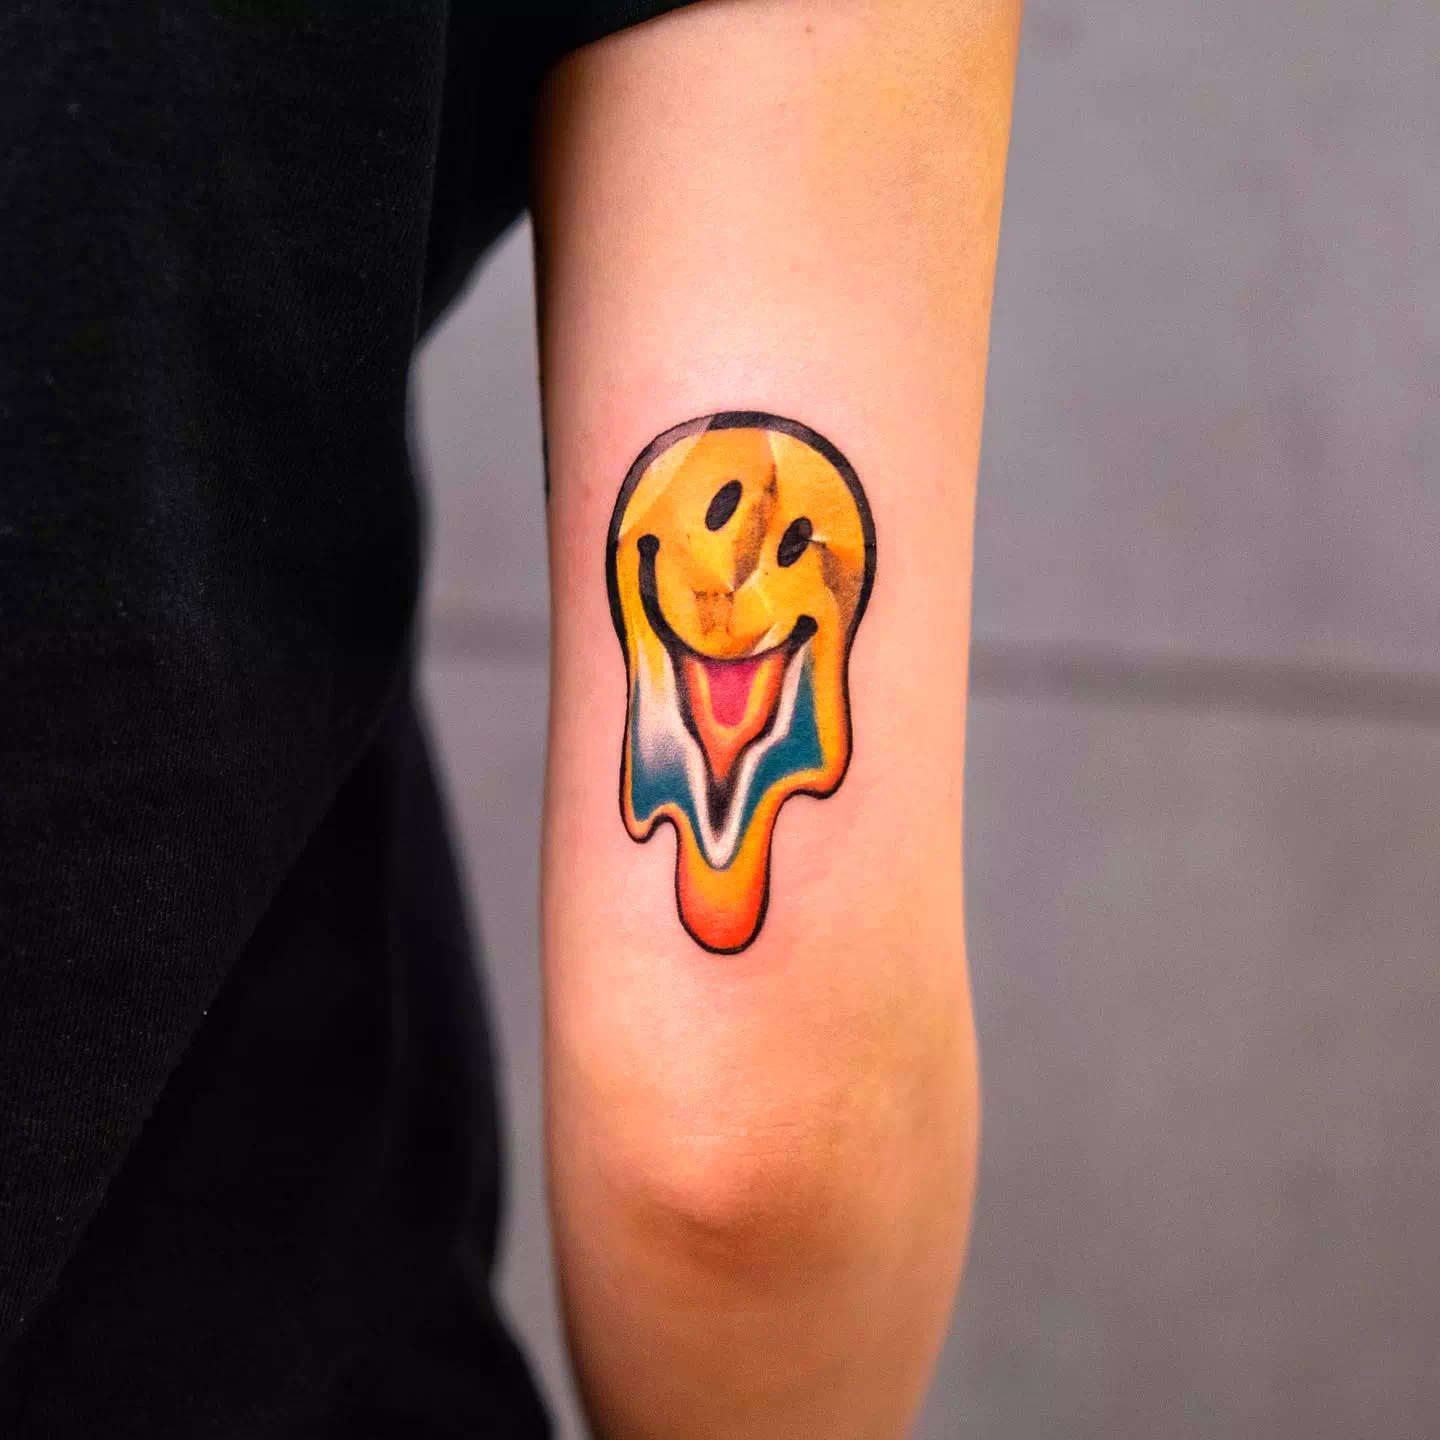 Yellow Smile Tattoo Ideas